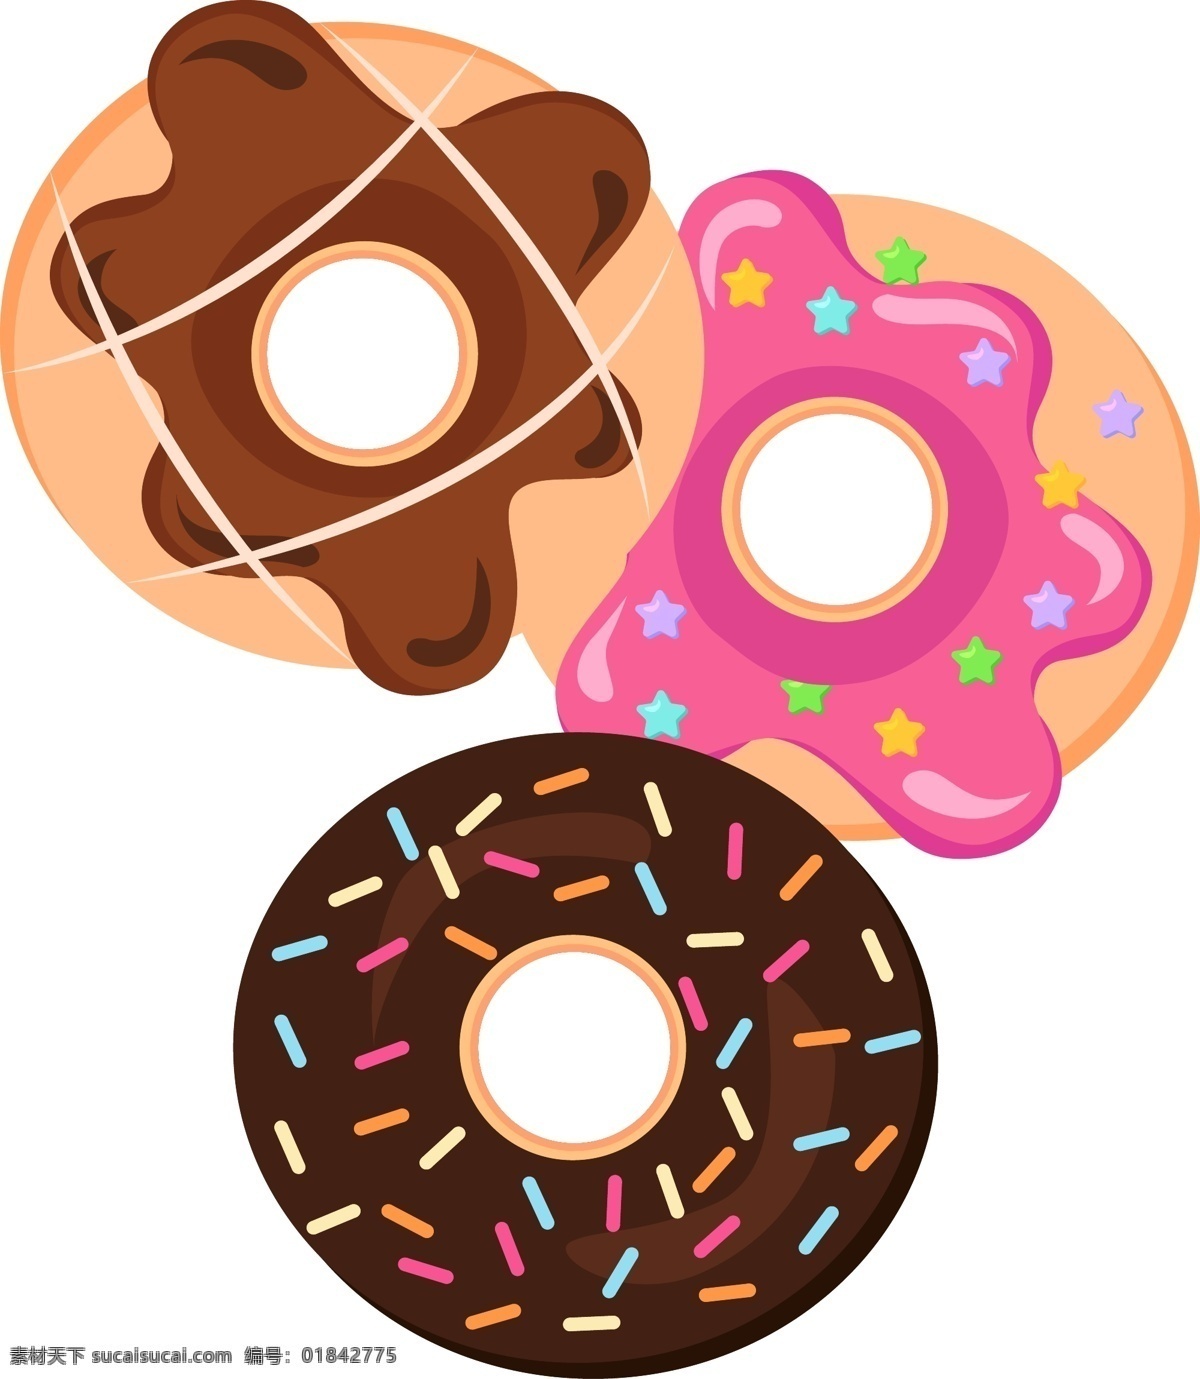 巧克力 甜甜 圈 矢量 免 抠 图 巧克力甜甜圈 卡通的 咖啡色 好吃的 小蛋糕 小面包 手绘的 甜甜圈 甜品 甜点 蛋糕 黄色